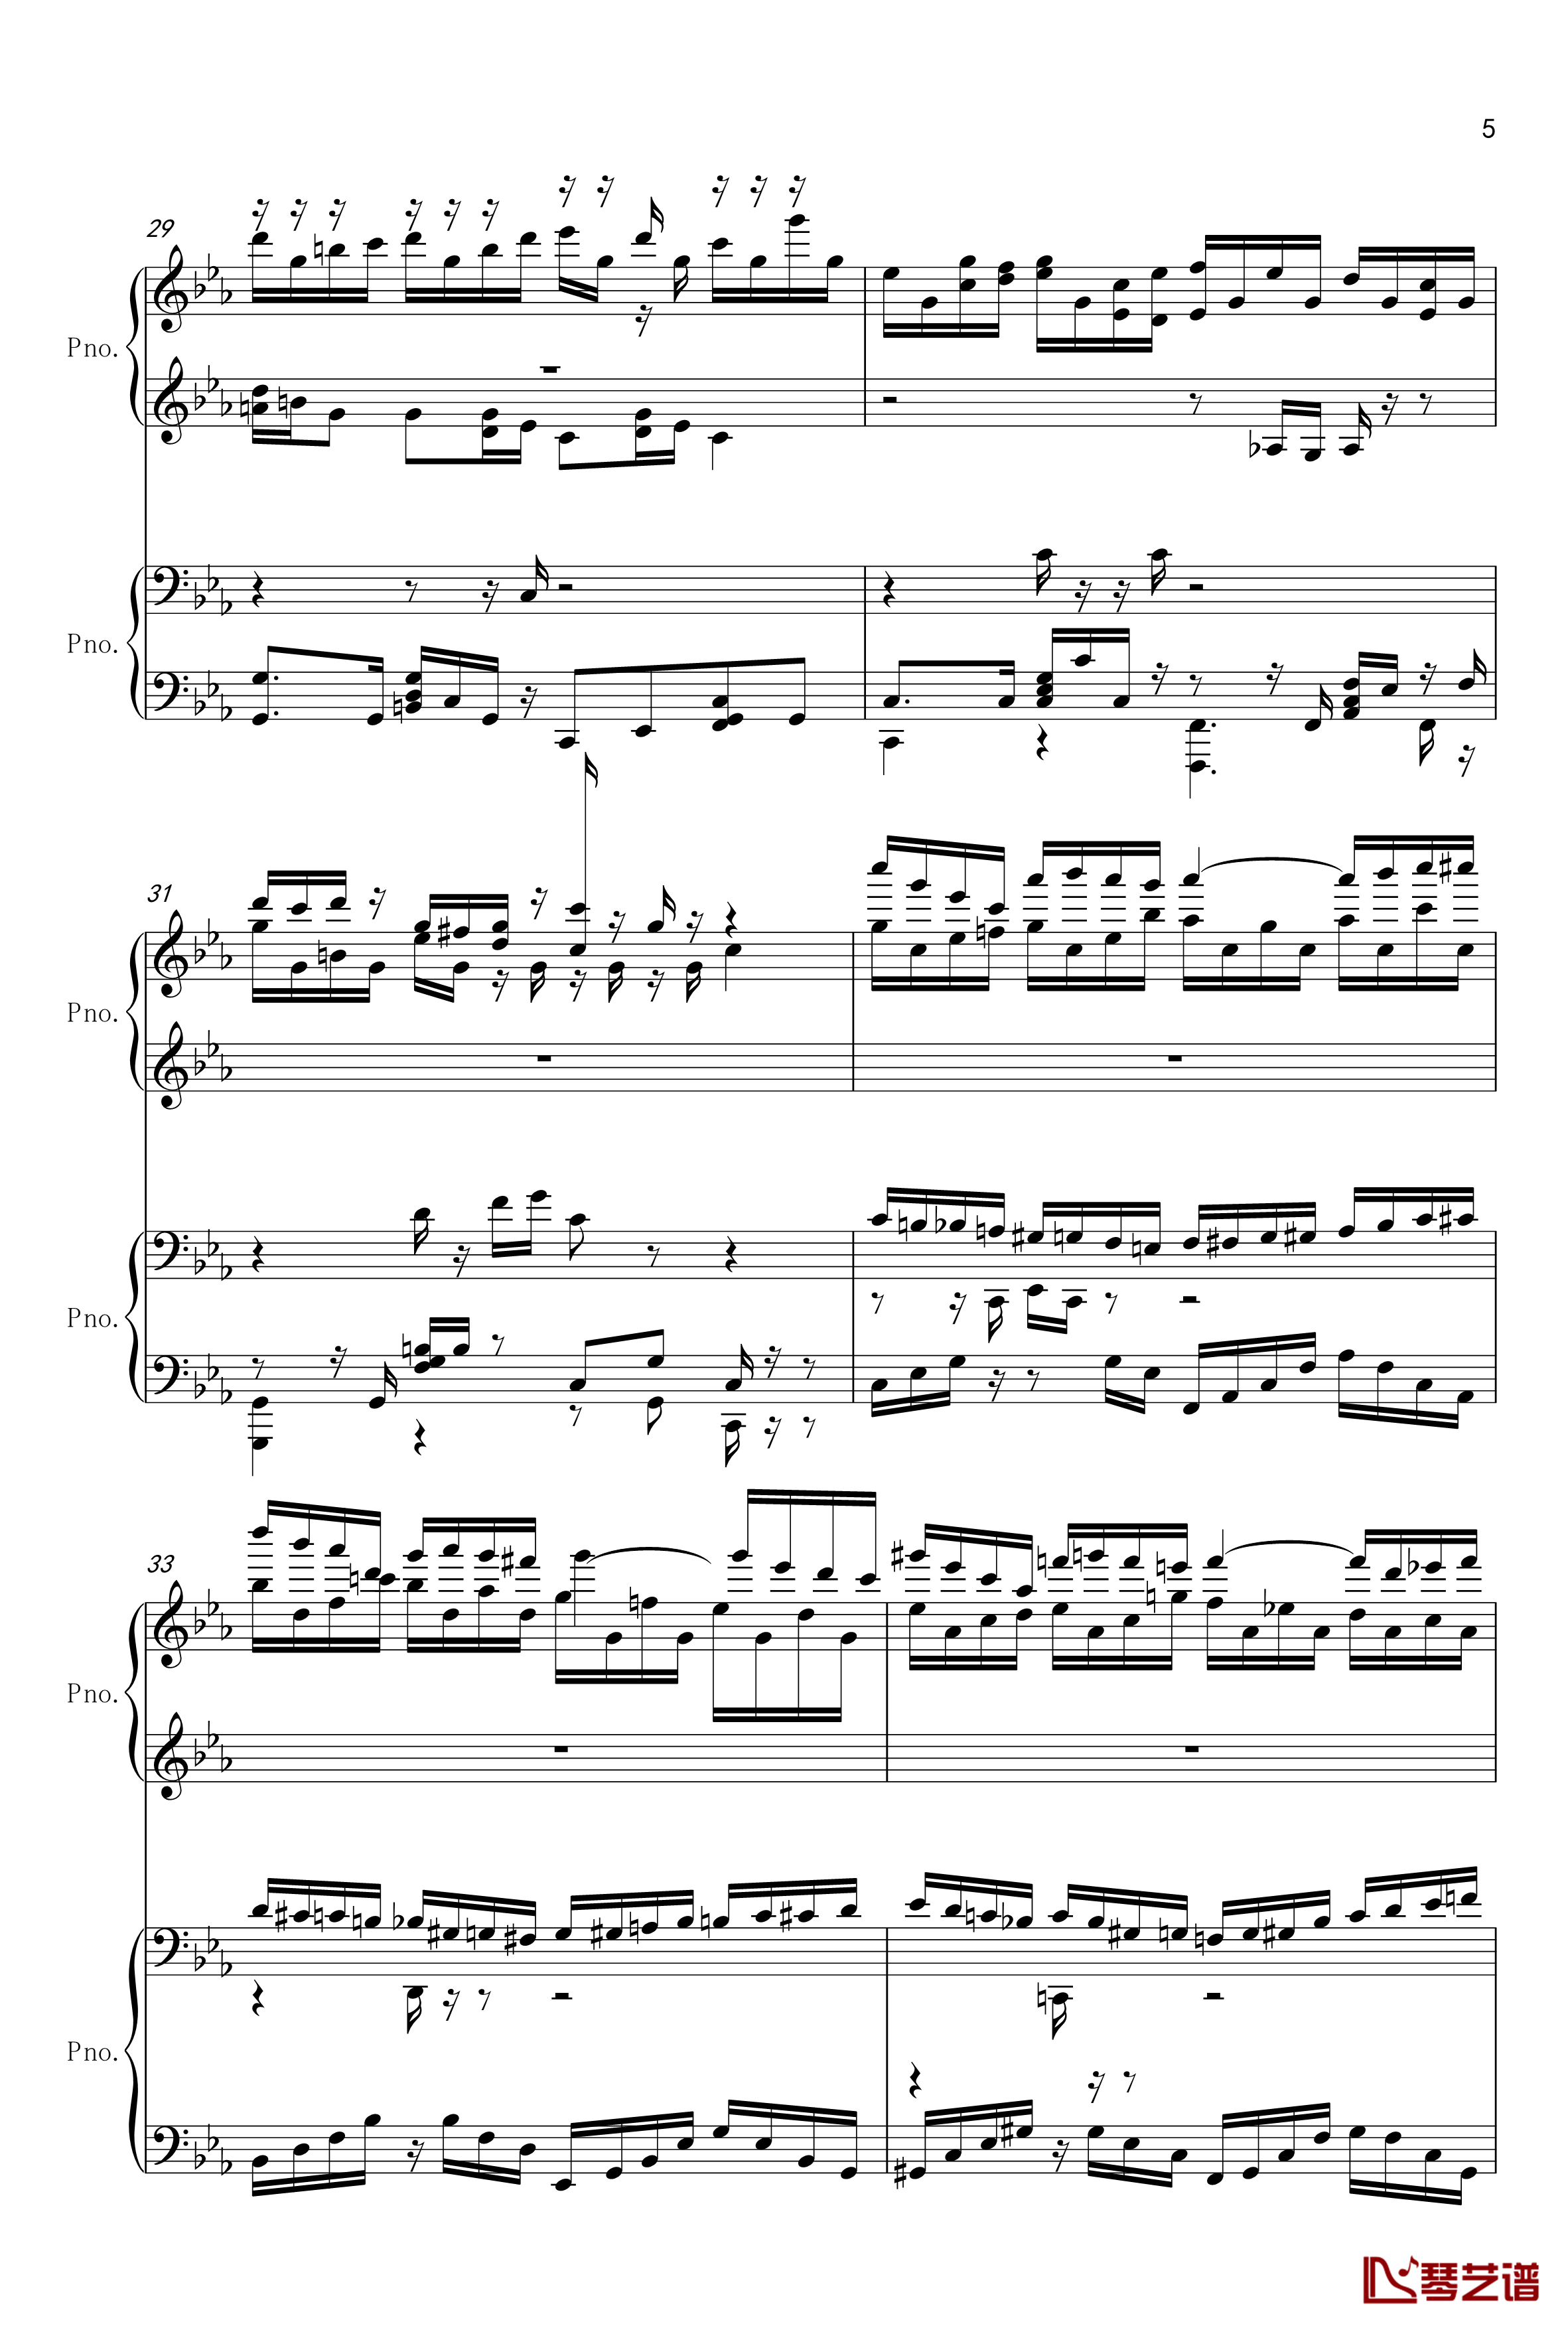 克罗地亚狂想曲-四手联弹钢琴谱-单钢琴-马克西姆-Maksim·Mrvica5